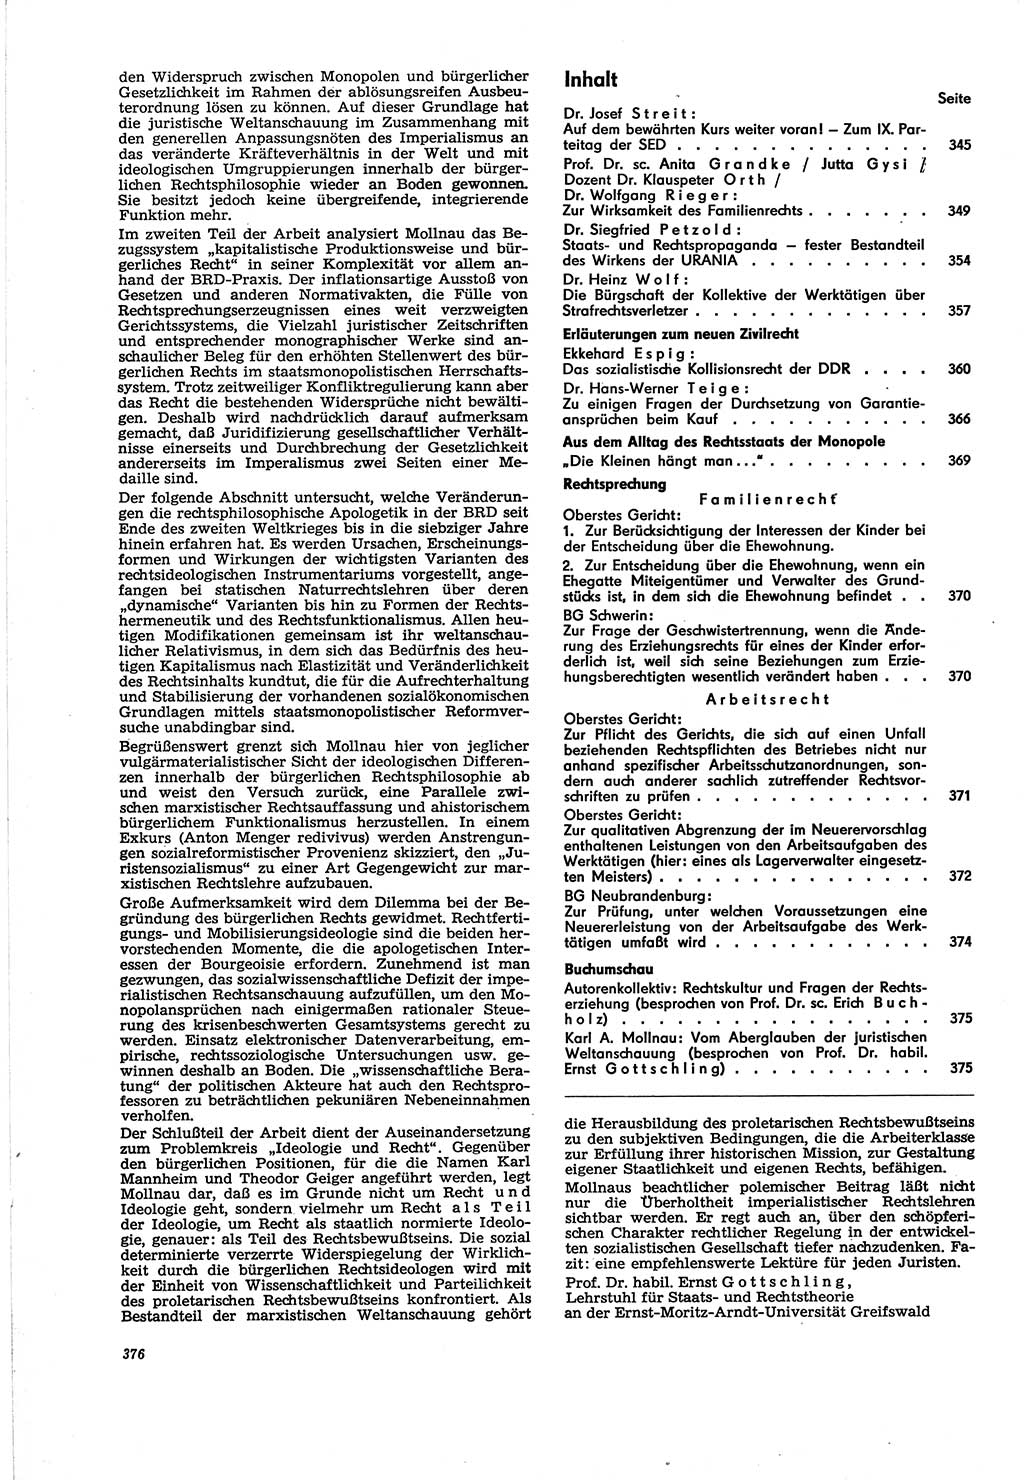 Neue Justiz (NJ), Zeitschrift für Recht und Rechtswissenschaft [Deutsche Demokratische Republik (DDR)], 30. Jahrgang 1976, Seite 376 (NJ DDR 1976, S. 376)